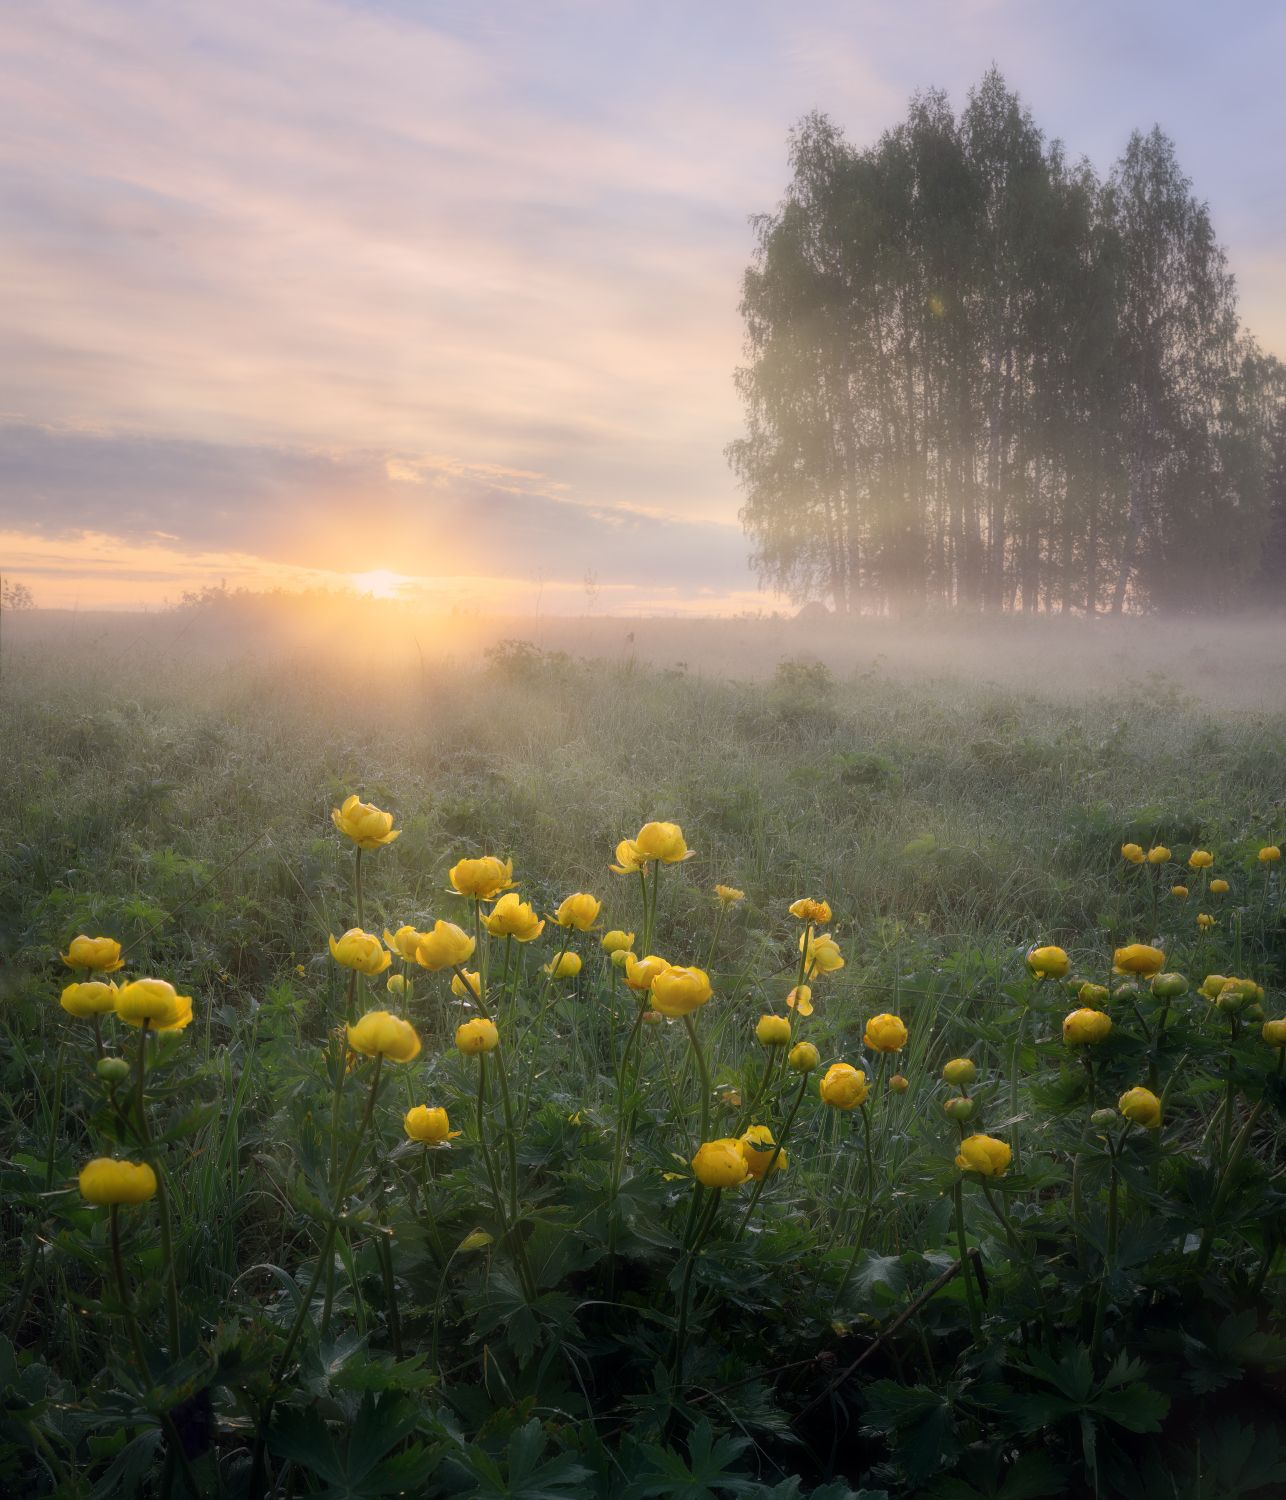 утро туман солнце рассвет цветы лучи, Сергей Буторин